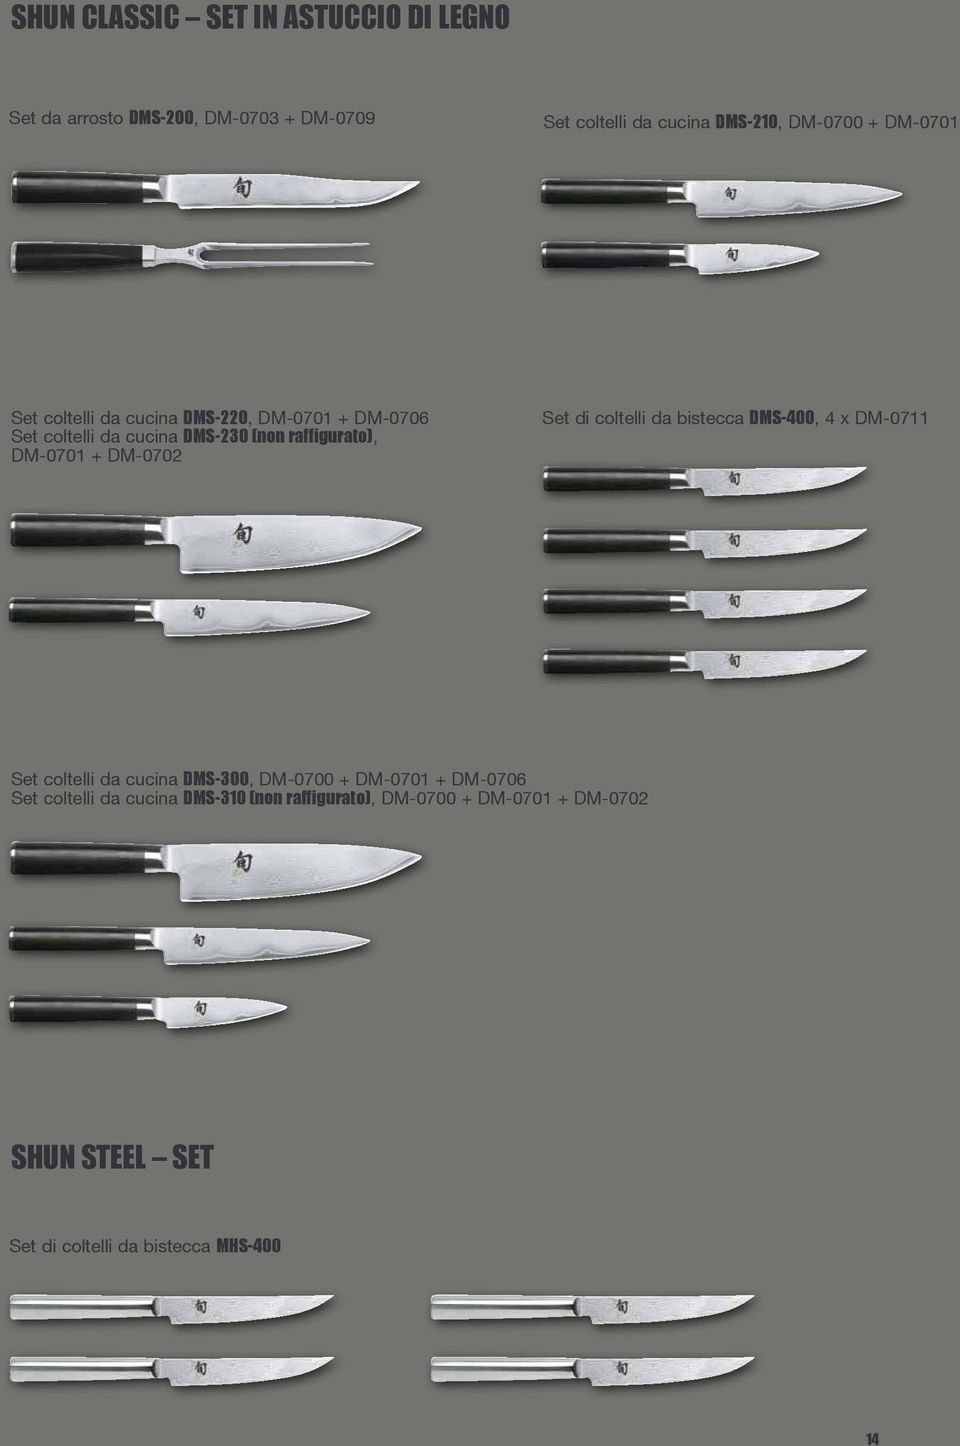 DM-0702 Set di coltelli da bistecca DMS-400, 4 x DM-0711 Set coltelli da cucina DMS-300, DM-0700 + DM-0701 + DM-0706 Set